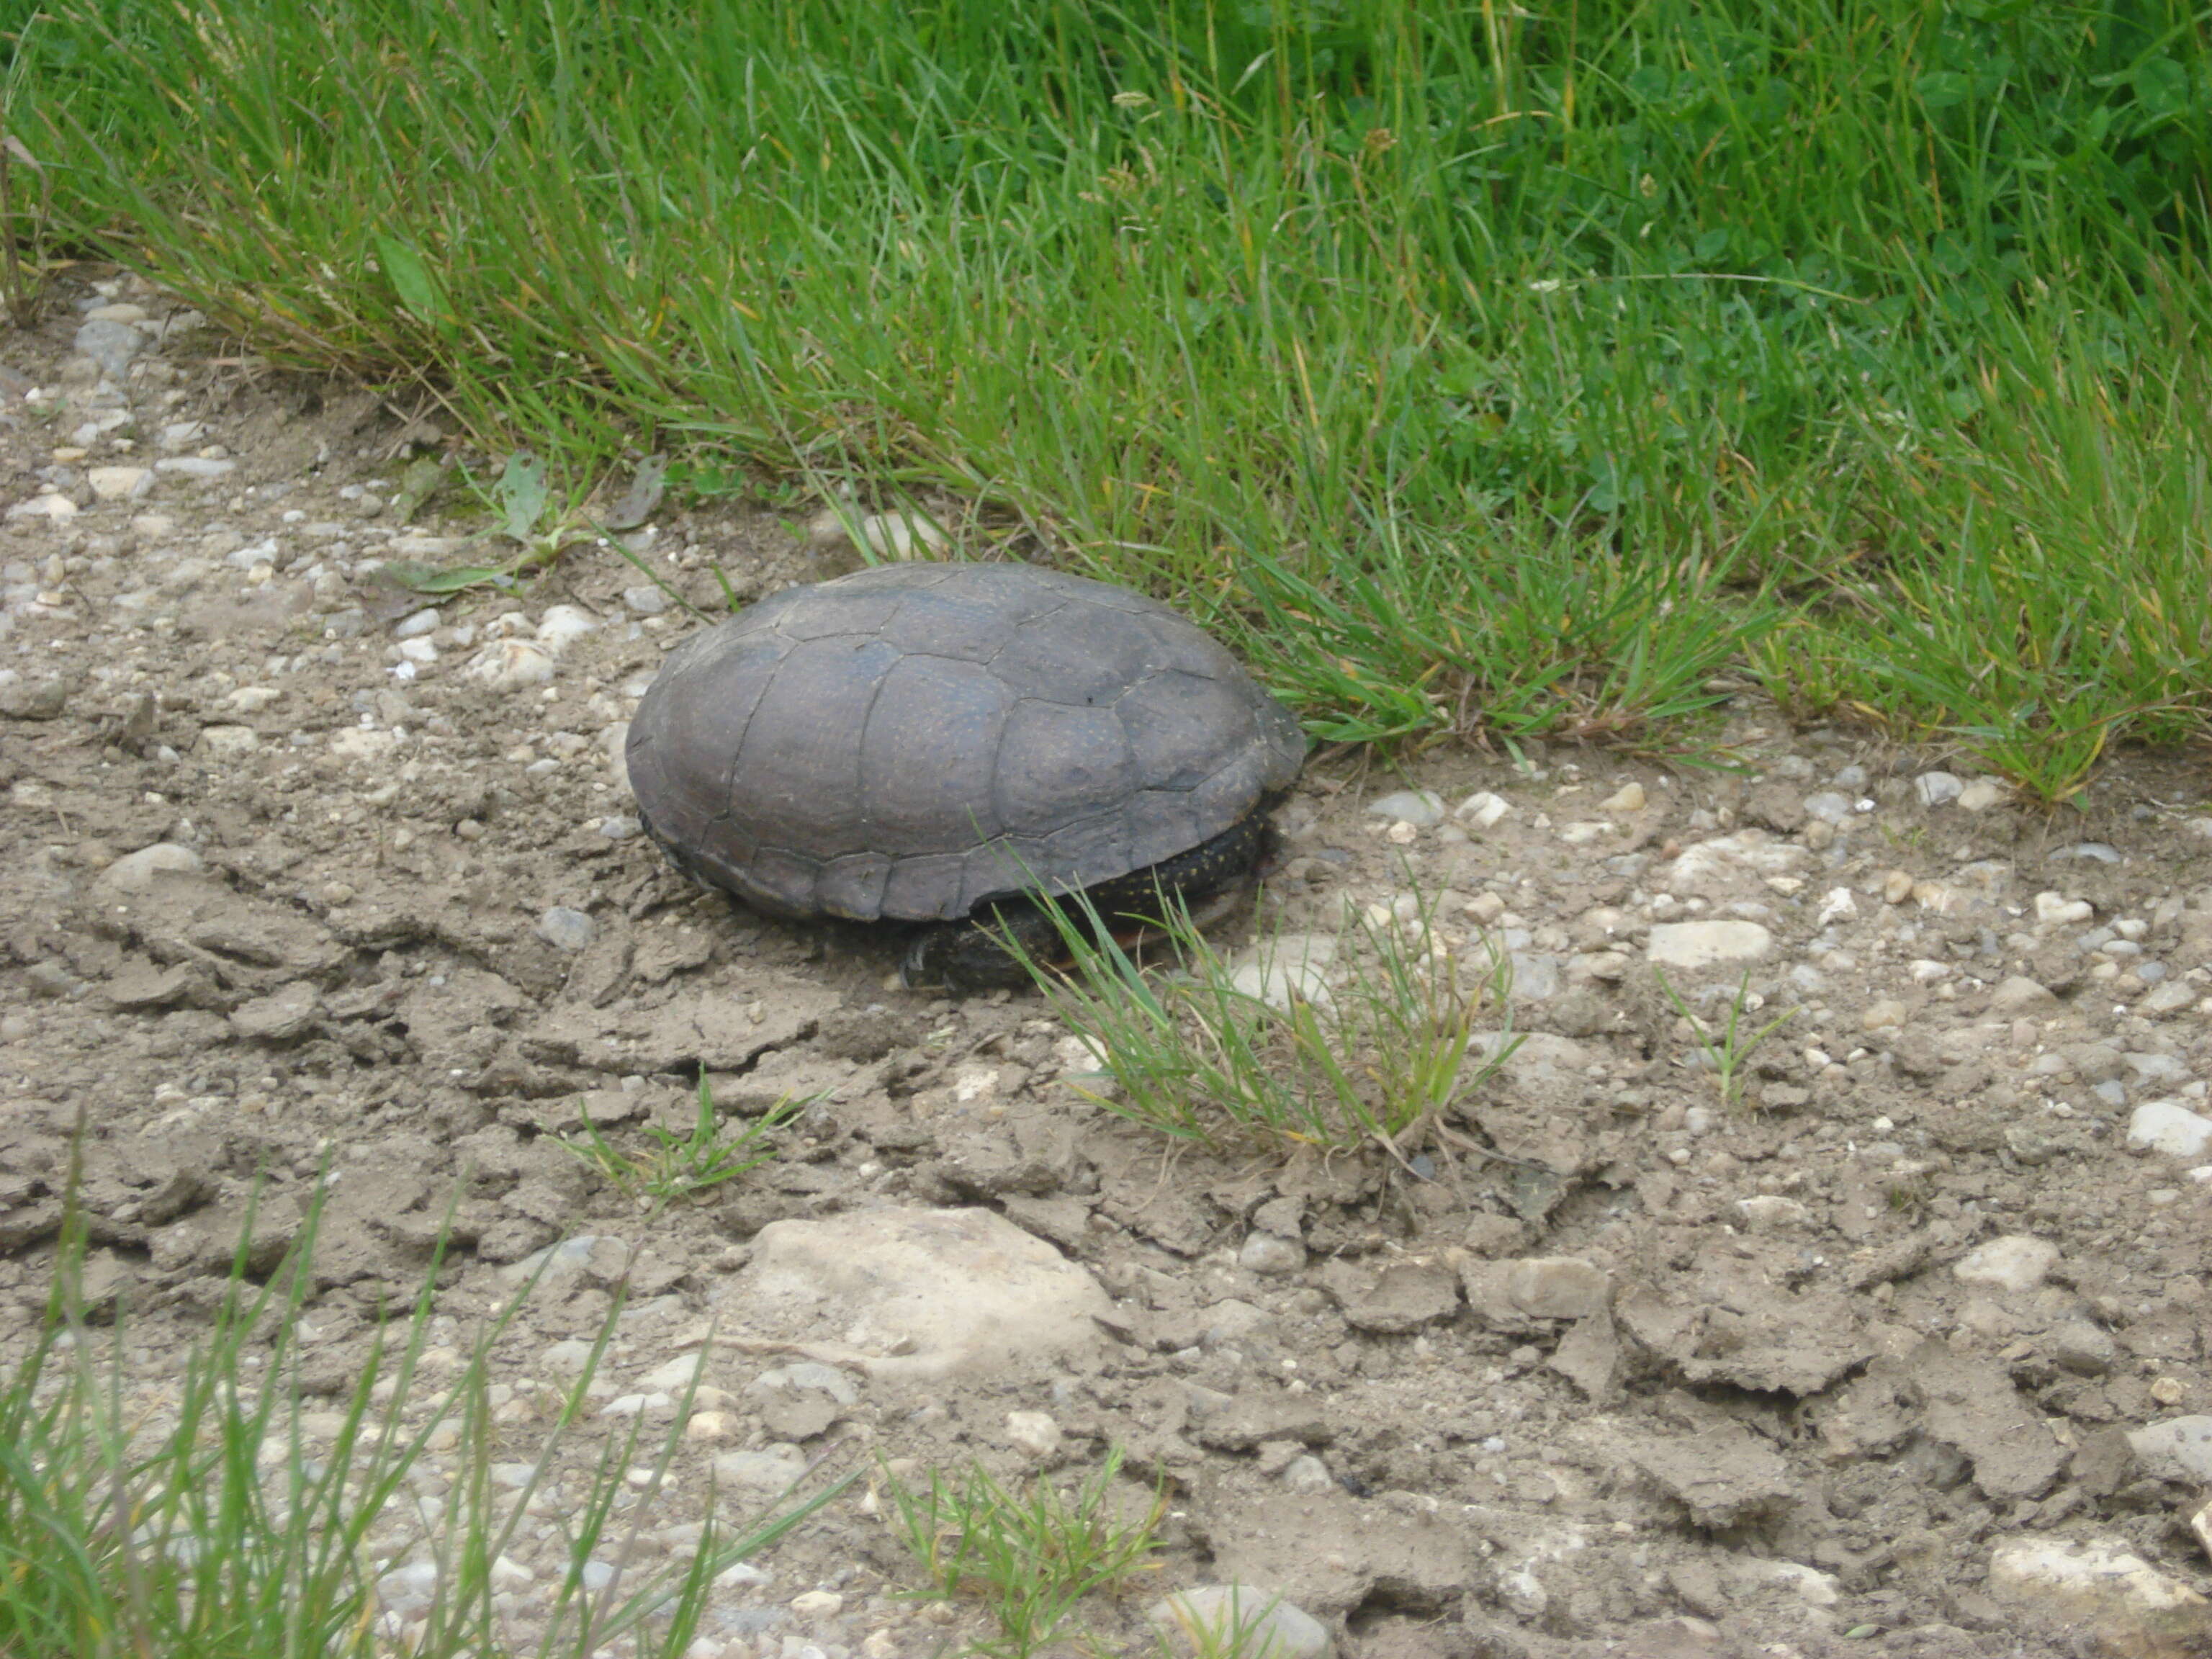 Image of European Pond Turtle